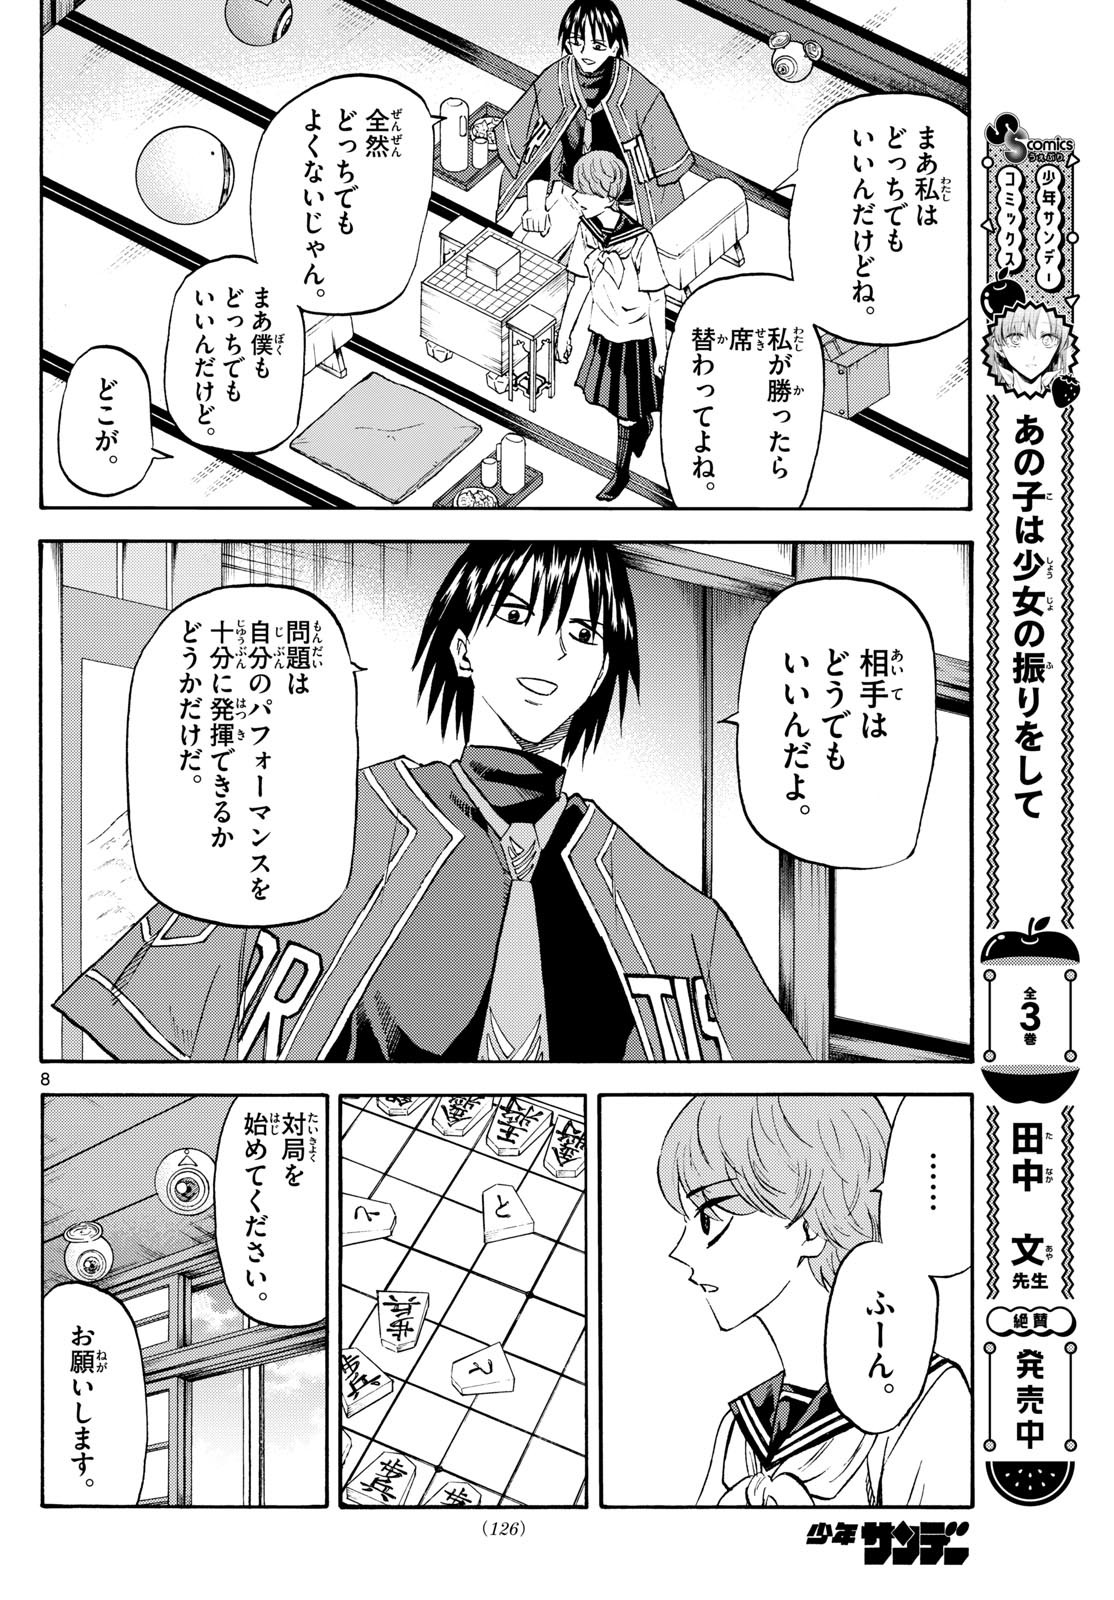 Tatsu to Ichigo - Chapter 197 - Page 8